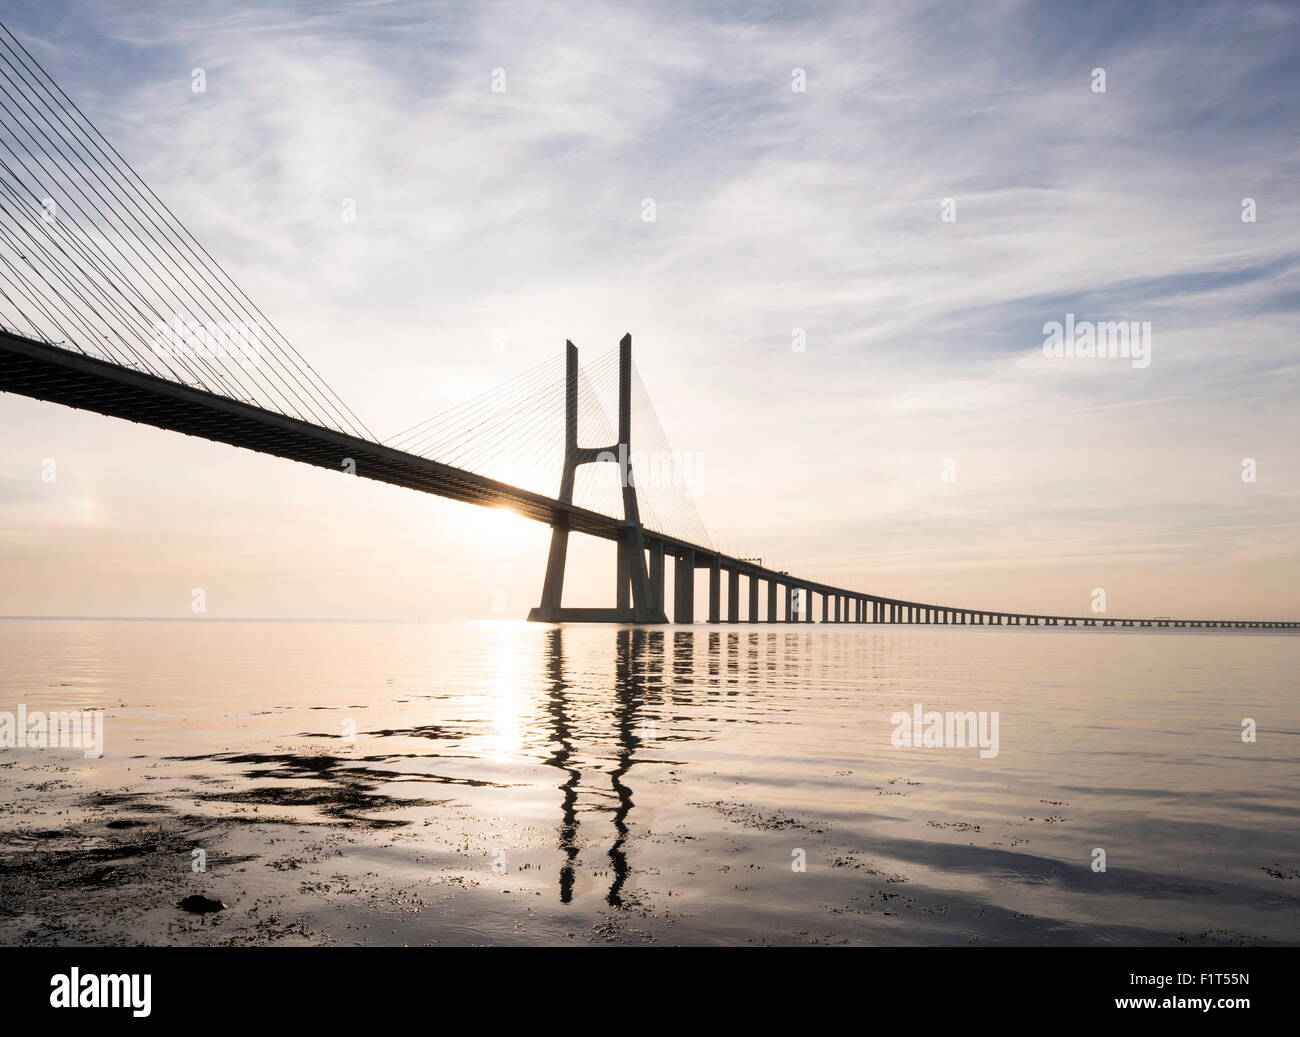 Vasco da Gama puente sobre el Rio Tejo (Tajo) al amanecer, Lisboa, Portugal, Europa Foto de stock